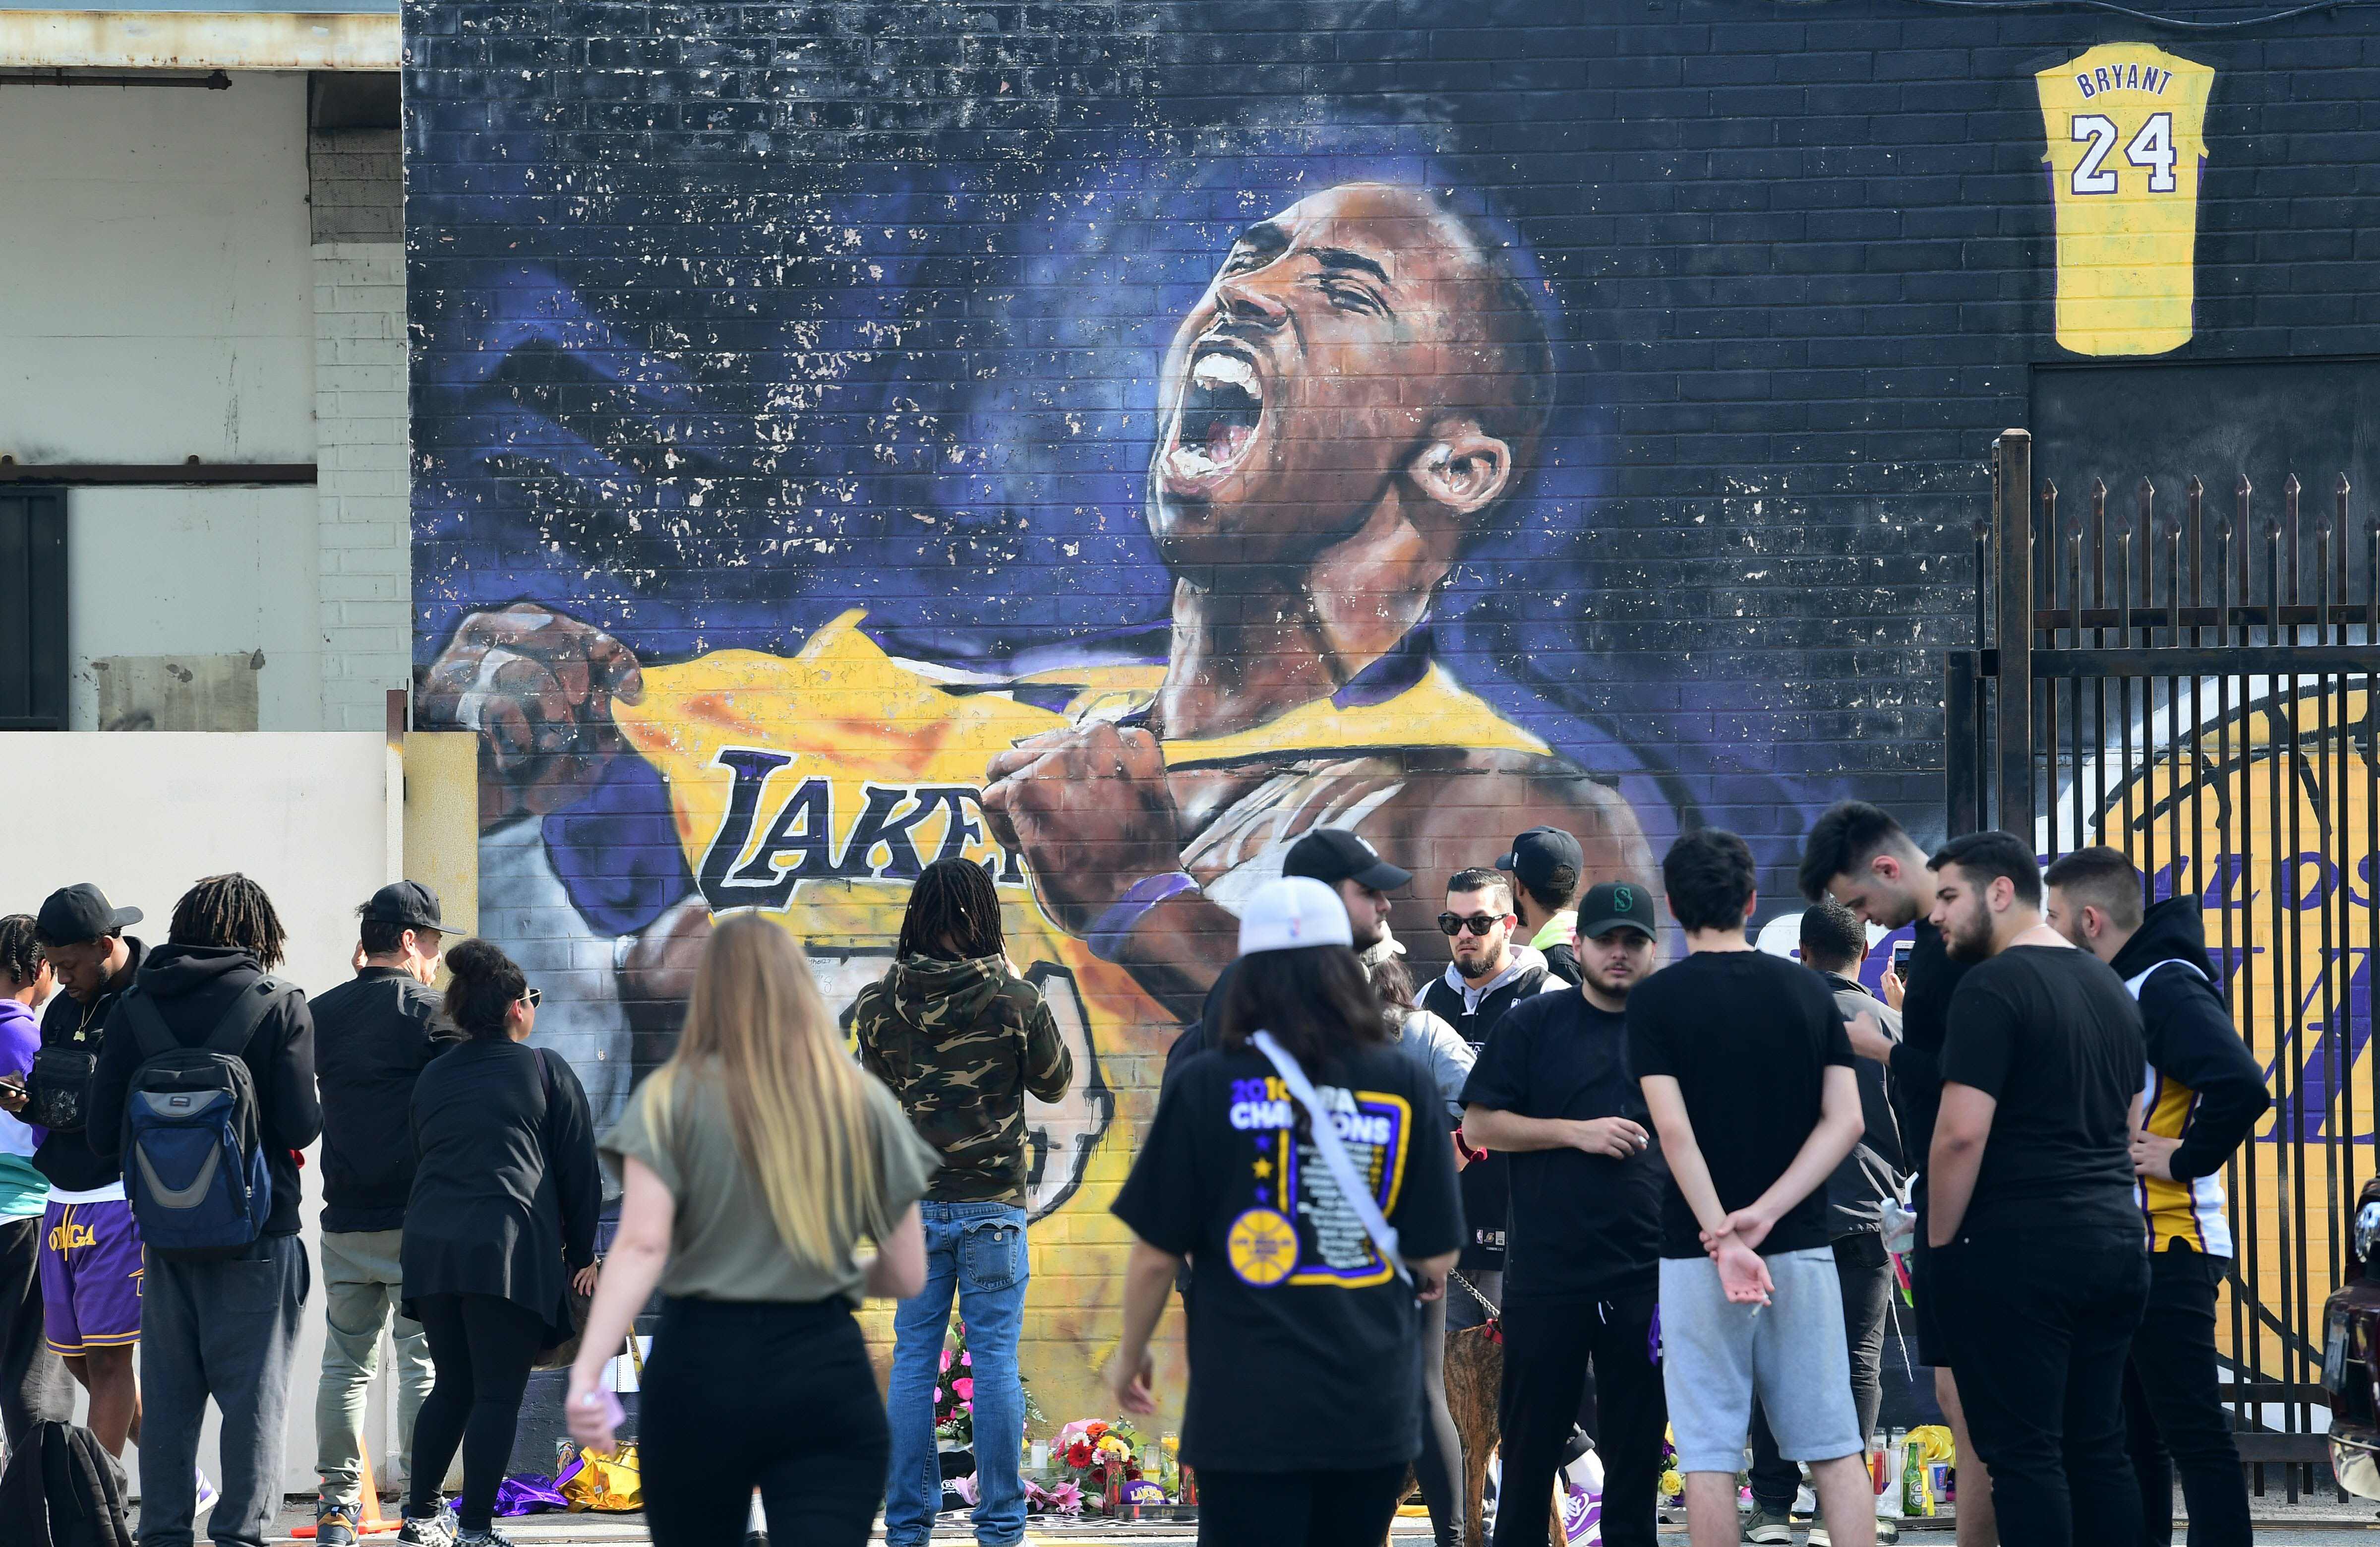 Fanáticos se reúnen para llorar la muerte de la leyenda de la NBA Kobe Bryant en un mural cerca del Staples Center en Los Ángeles, California, un día después del trágico accidente. (Foto Prensa Libre: AFP).